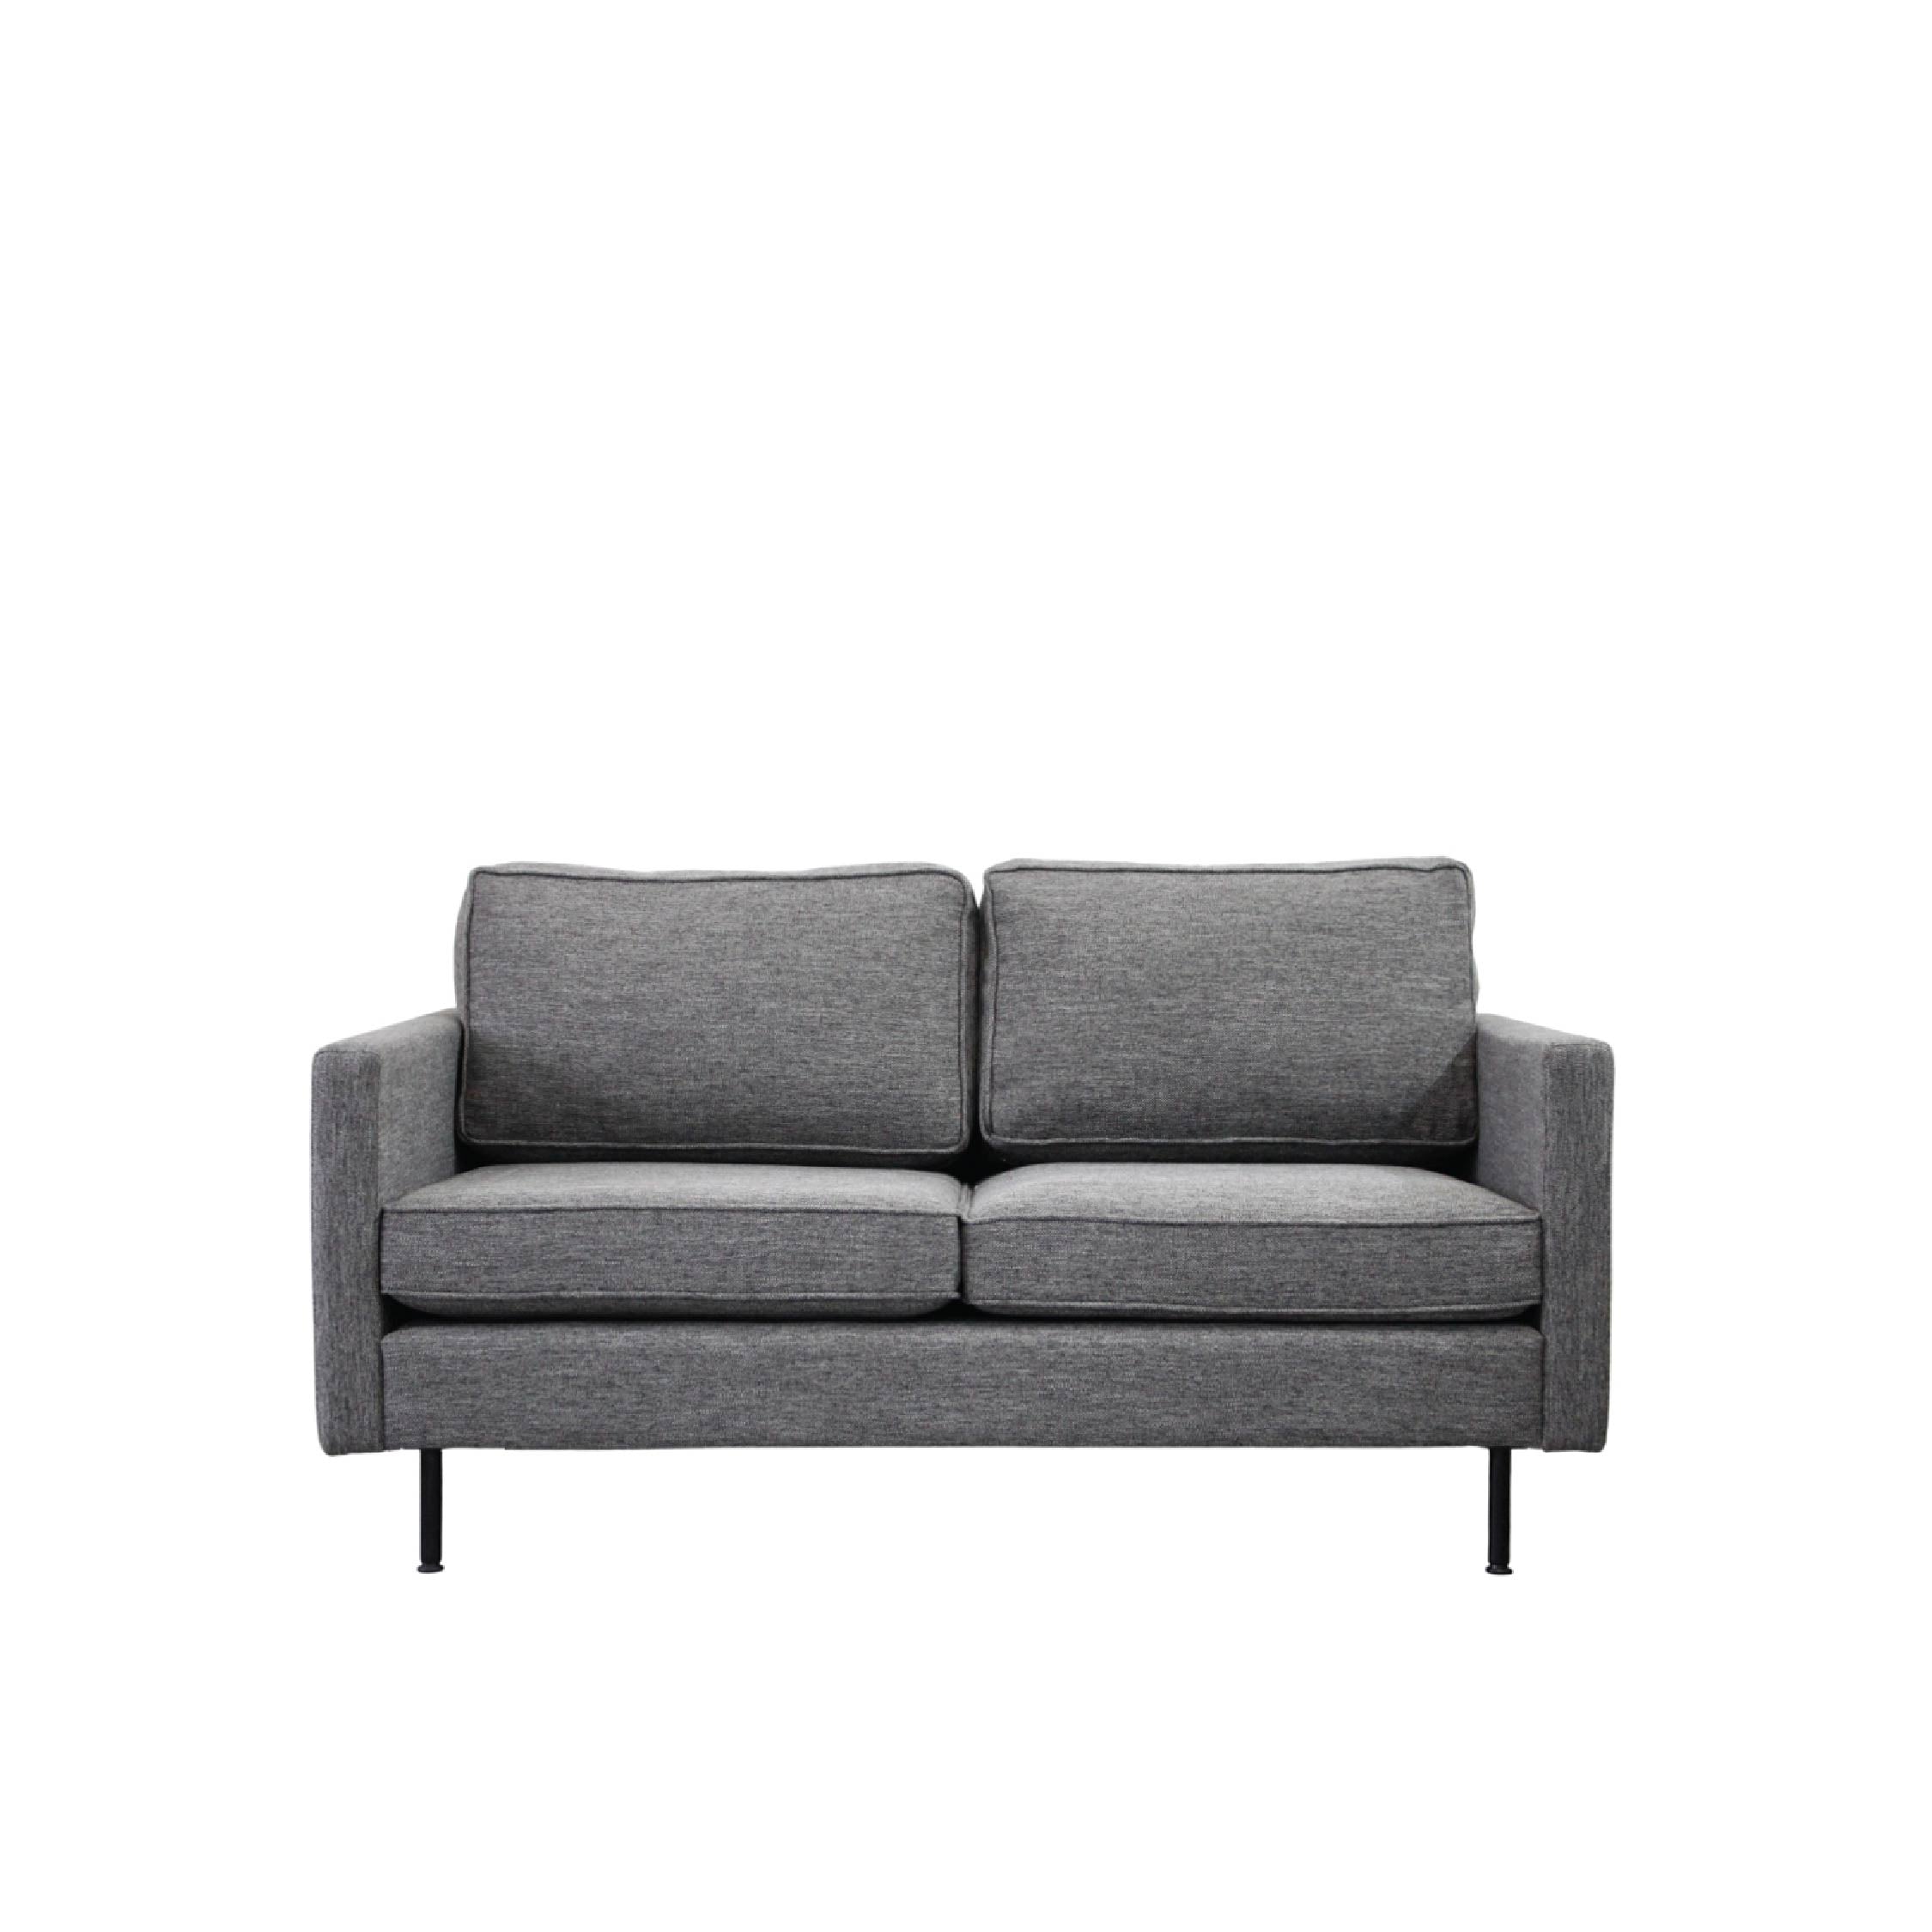 GARIS Sofa 2 Seater in Charcoal Fabric